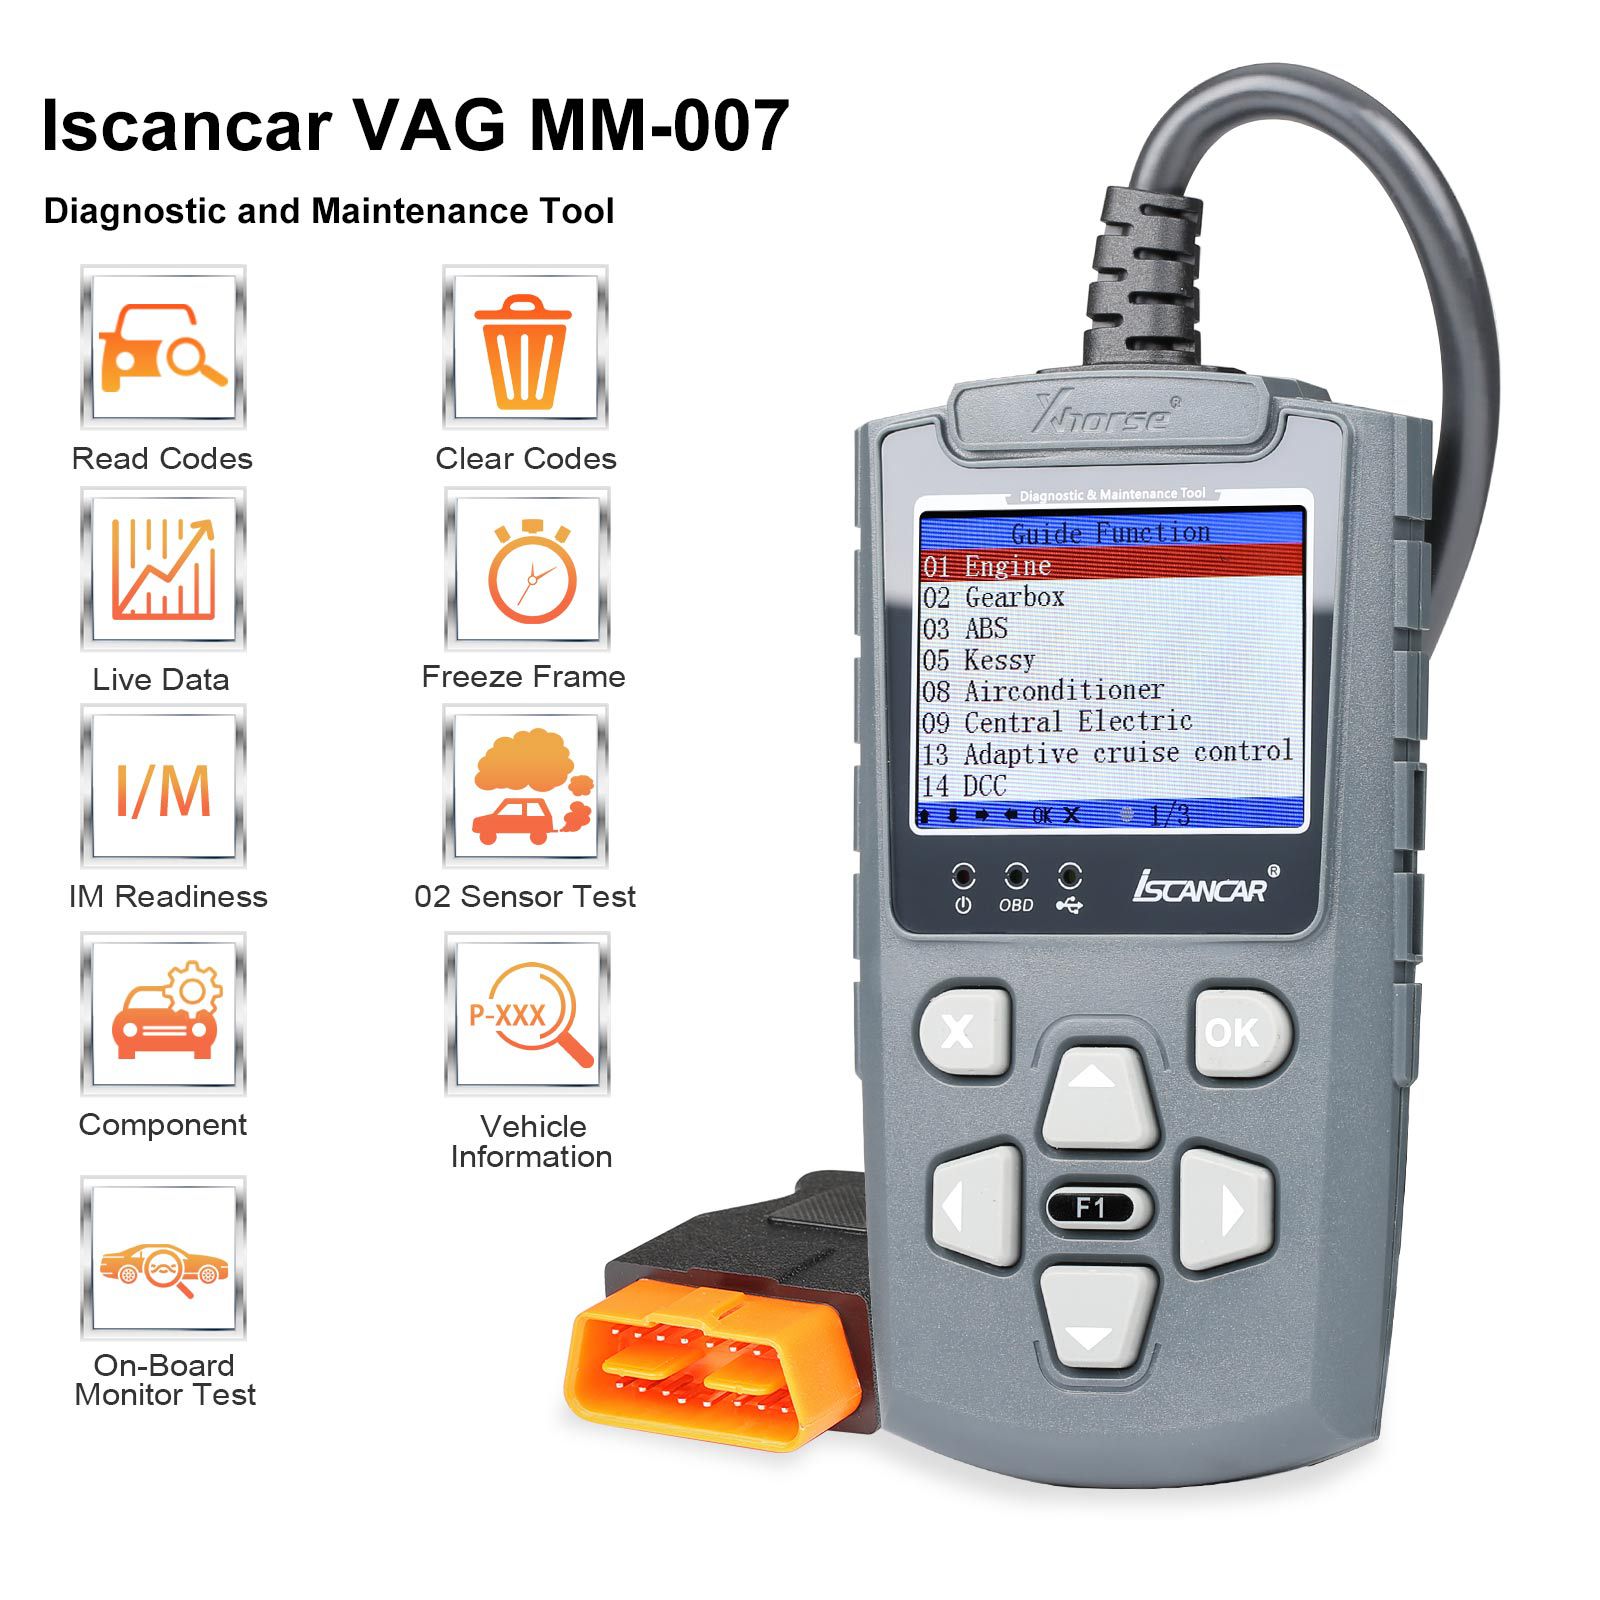 La herramienta de diagnóstico y mantenimiento xhorse iscancar VAG - mm007 admite actualizaciones fuera de línea de las correcciones de kilometraje de volkswagen, audi, skoda, Seat y MQB